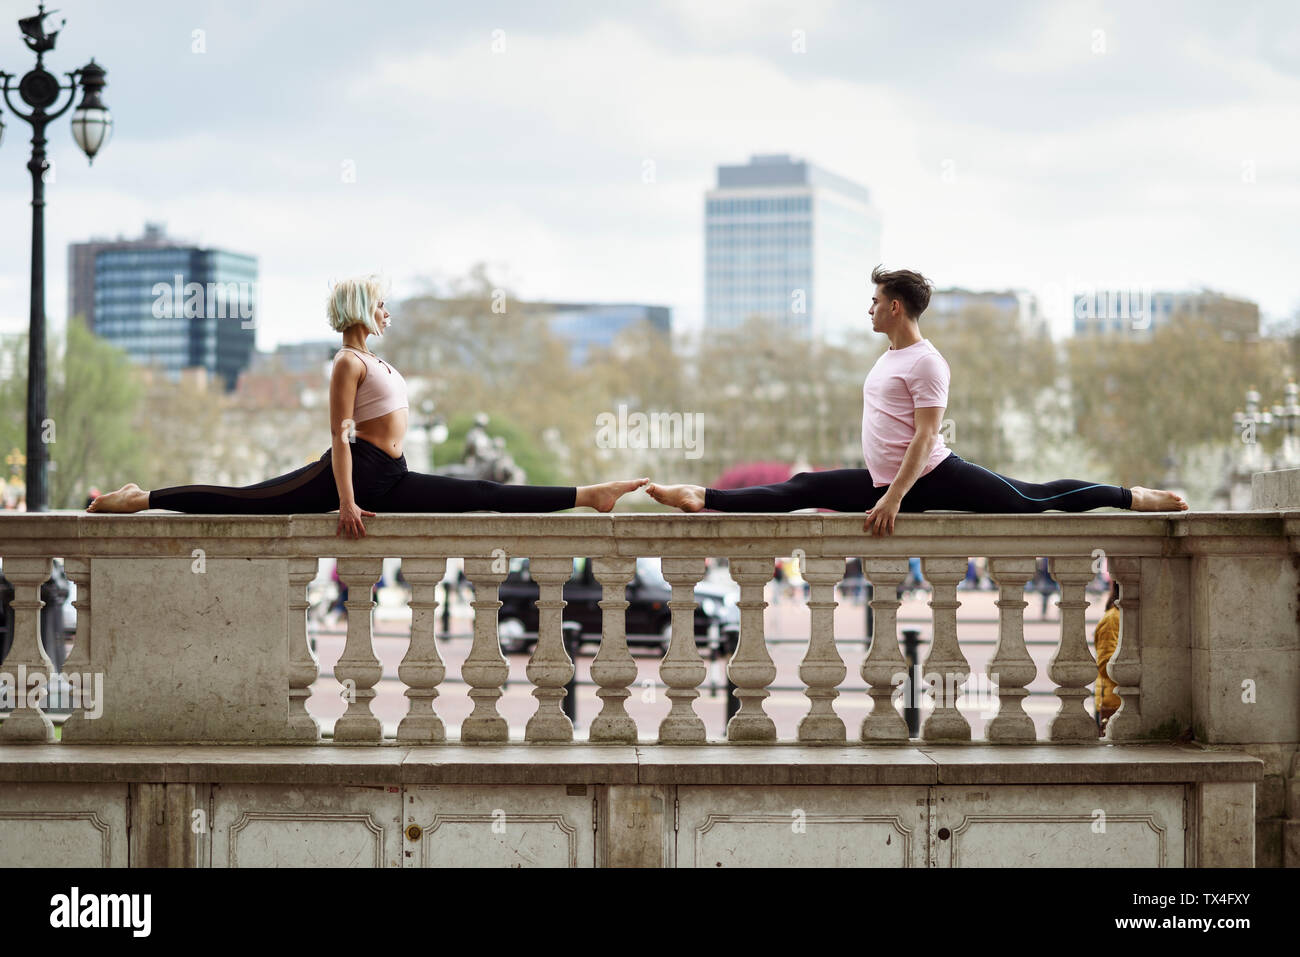 UK, London, young couple doing gymnastic acrobatics on parapet at Buckingham Palace Stock Photo